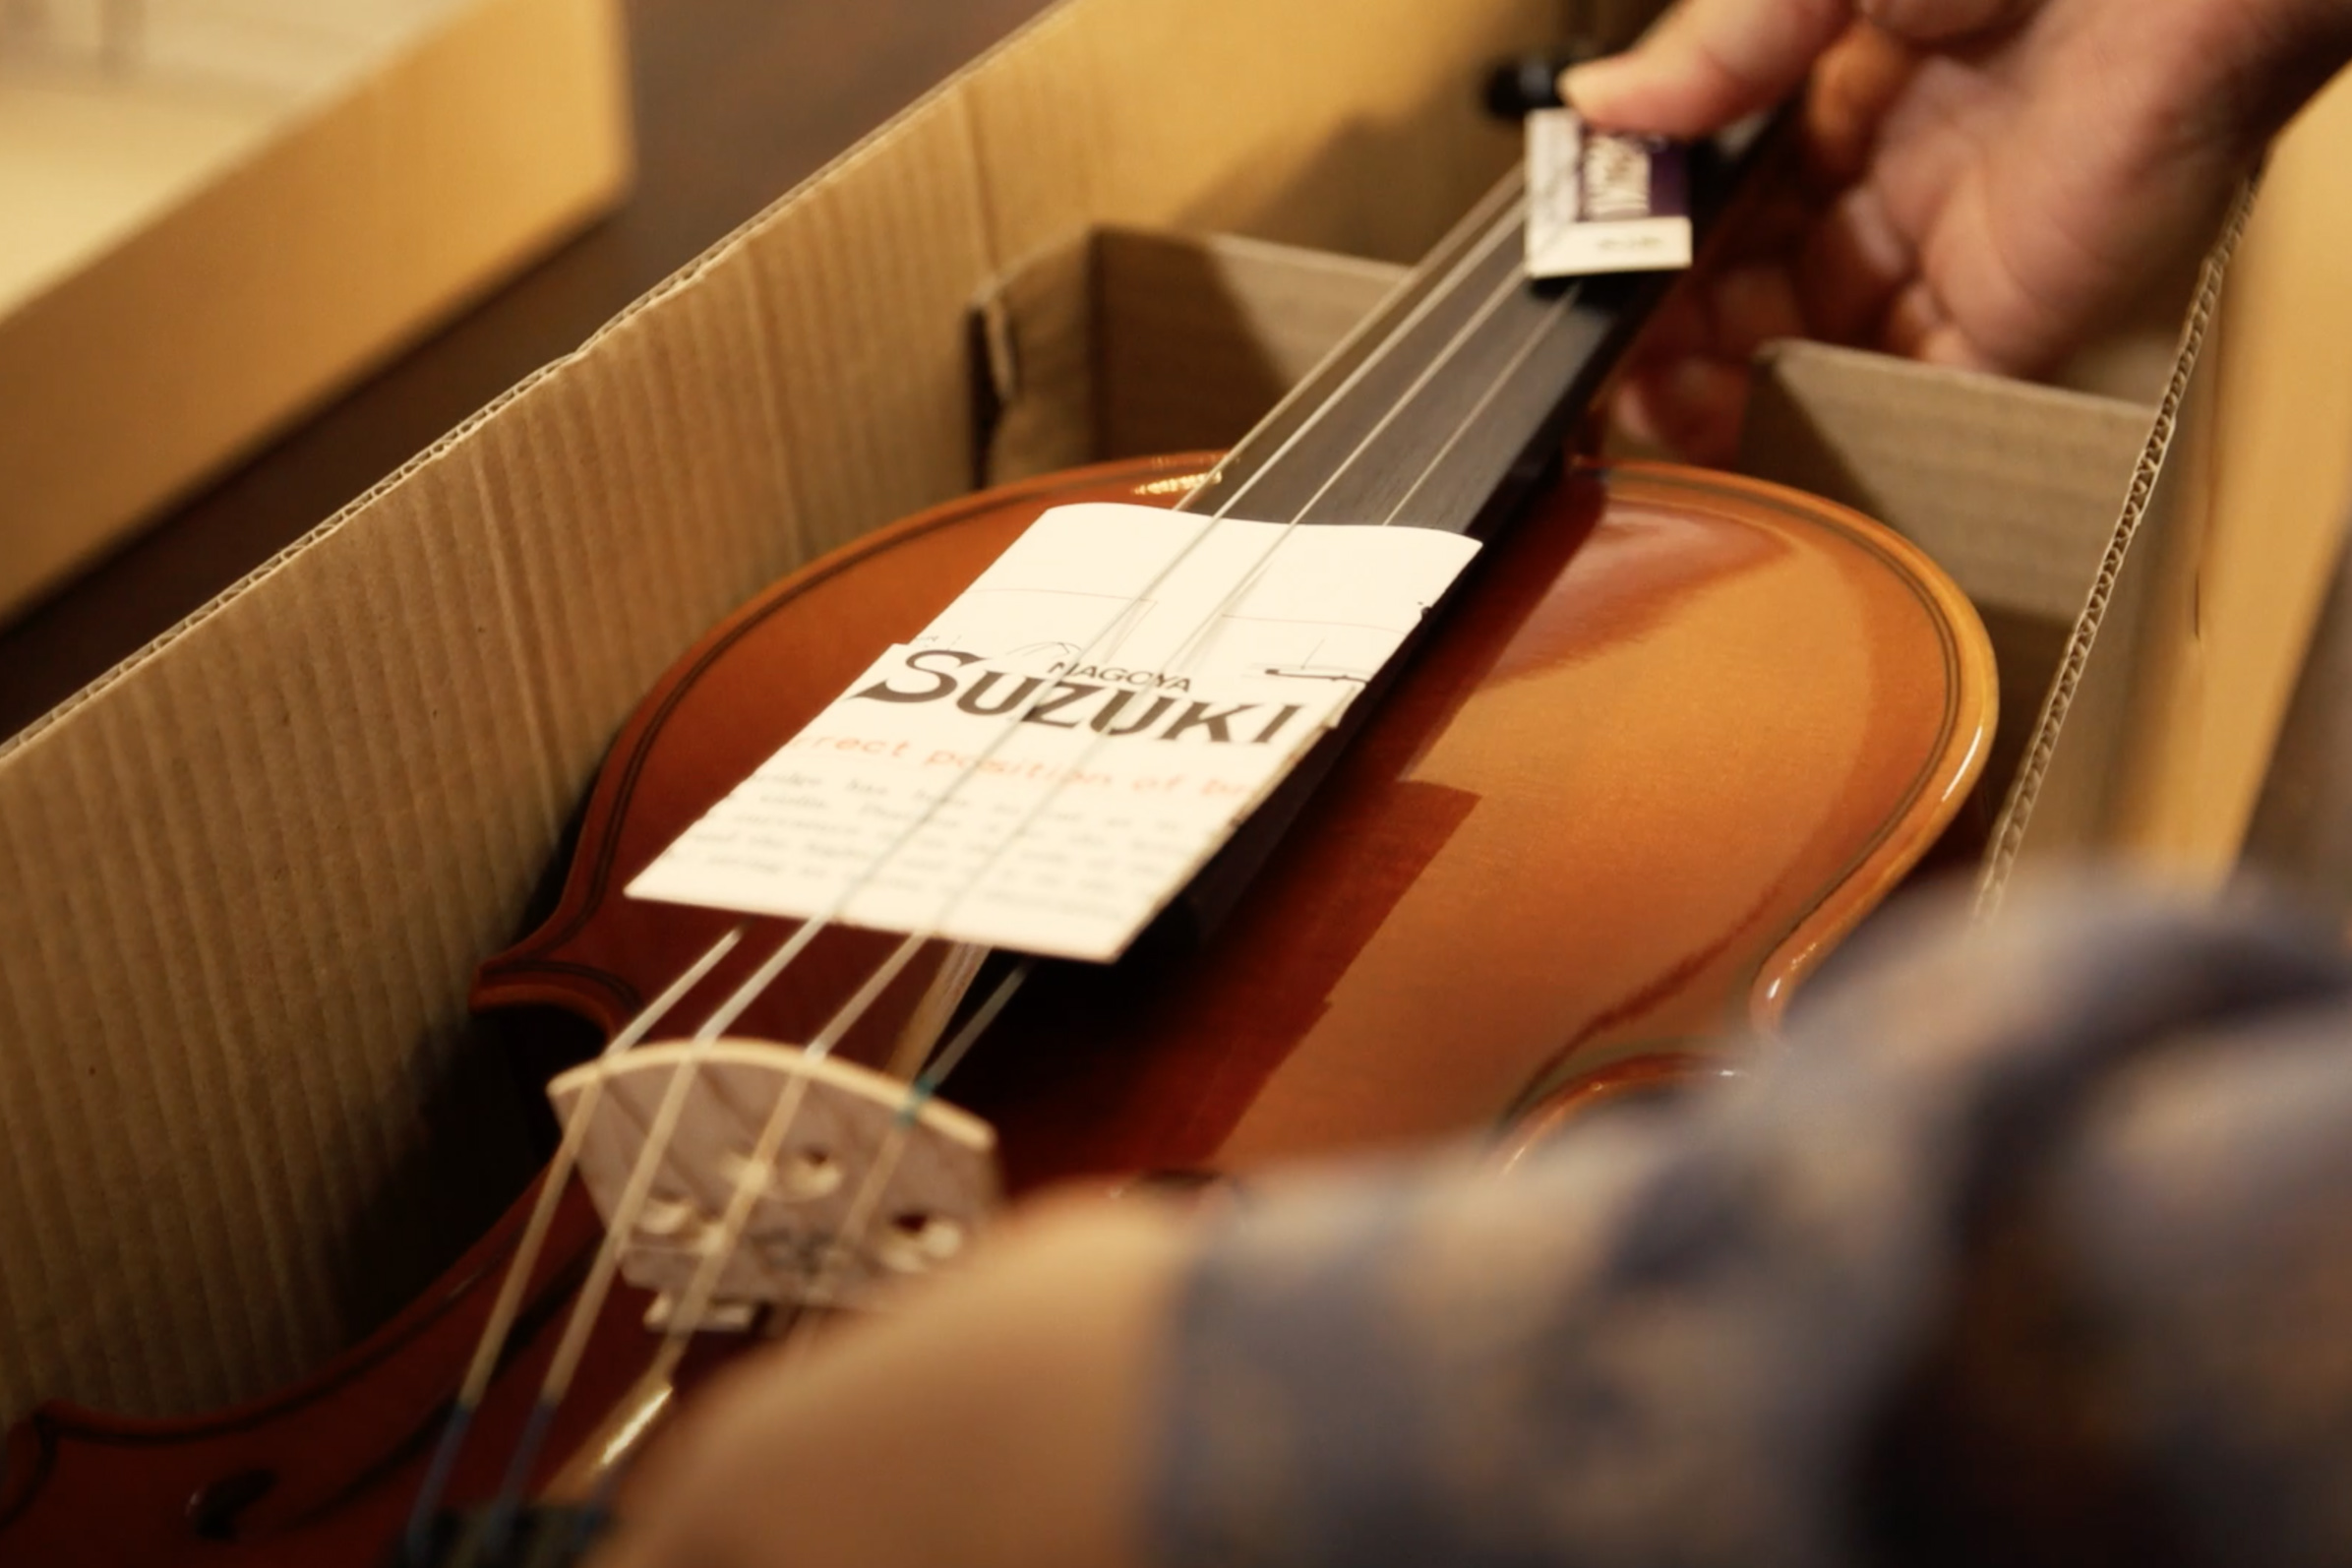 Suzuki Violin Workshop